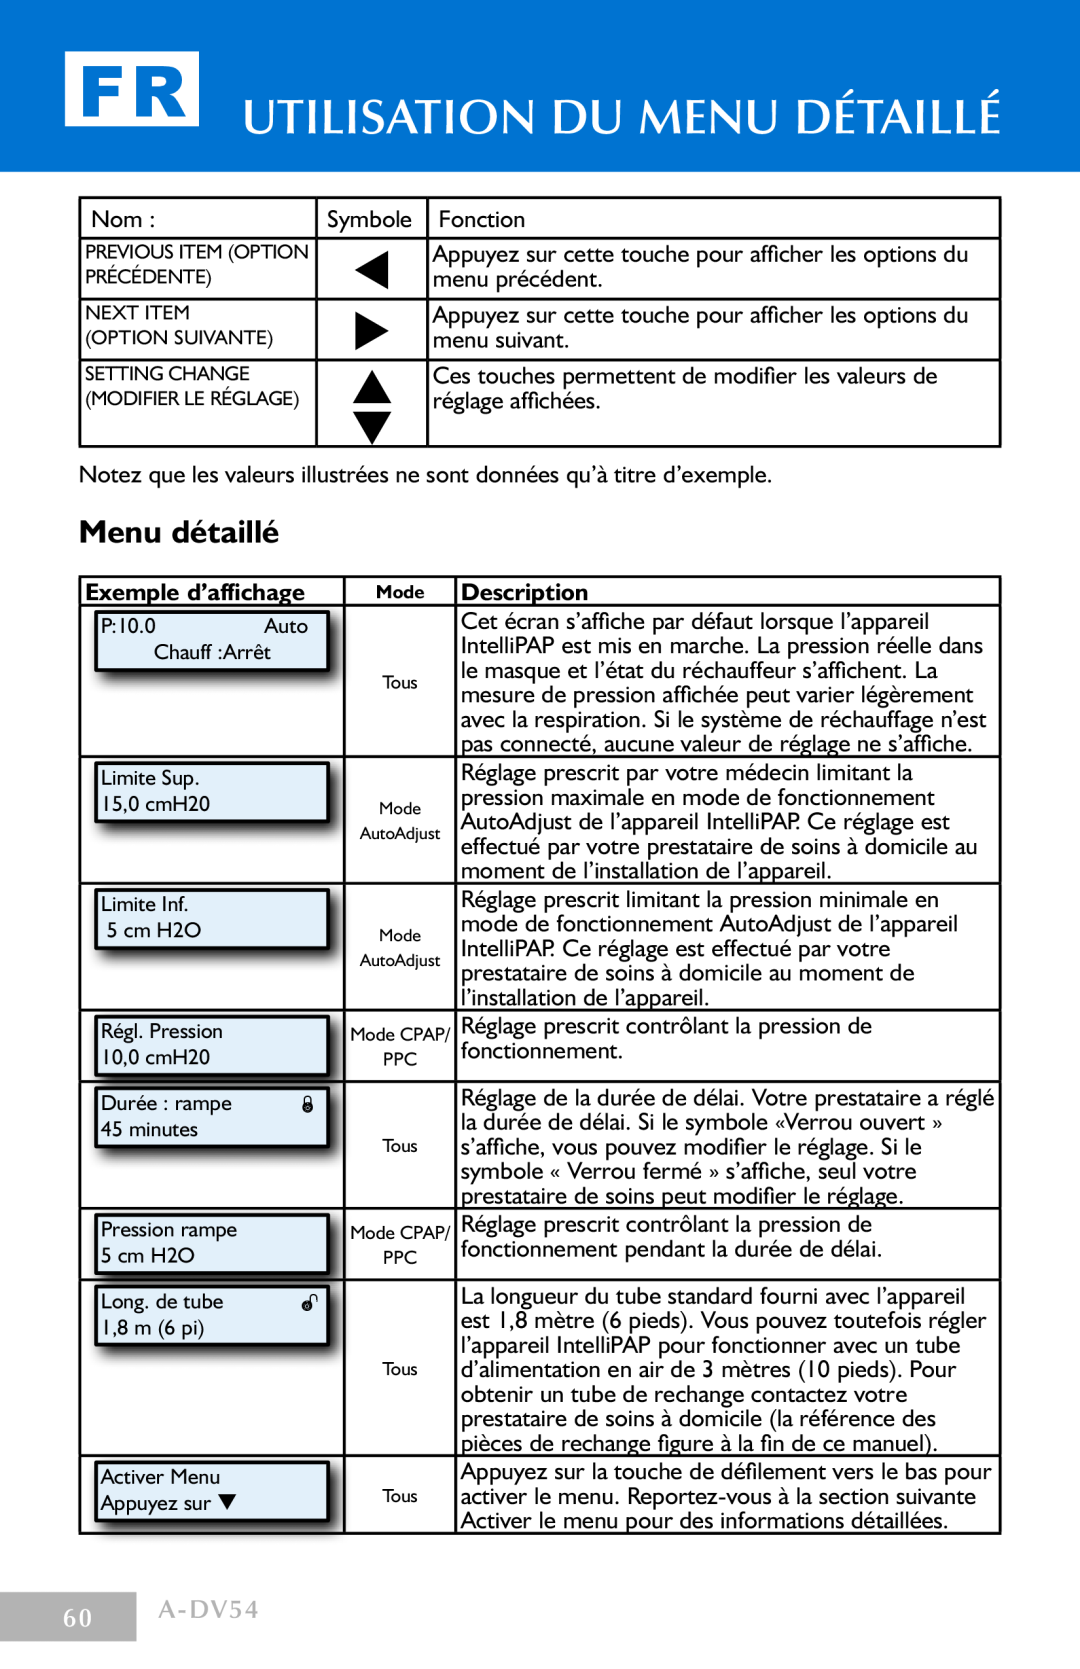 DeVillbiss Air Power Company Menu détaillé, A-DV54, Utilisation du menu détaillé, Exemple d’affichage, Description 